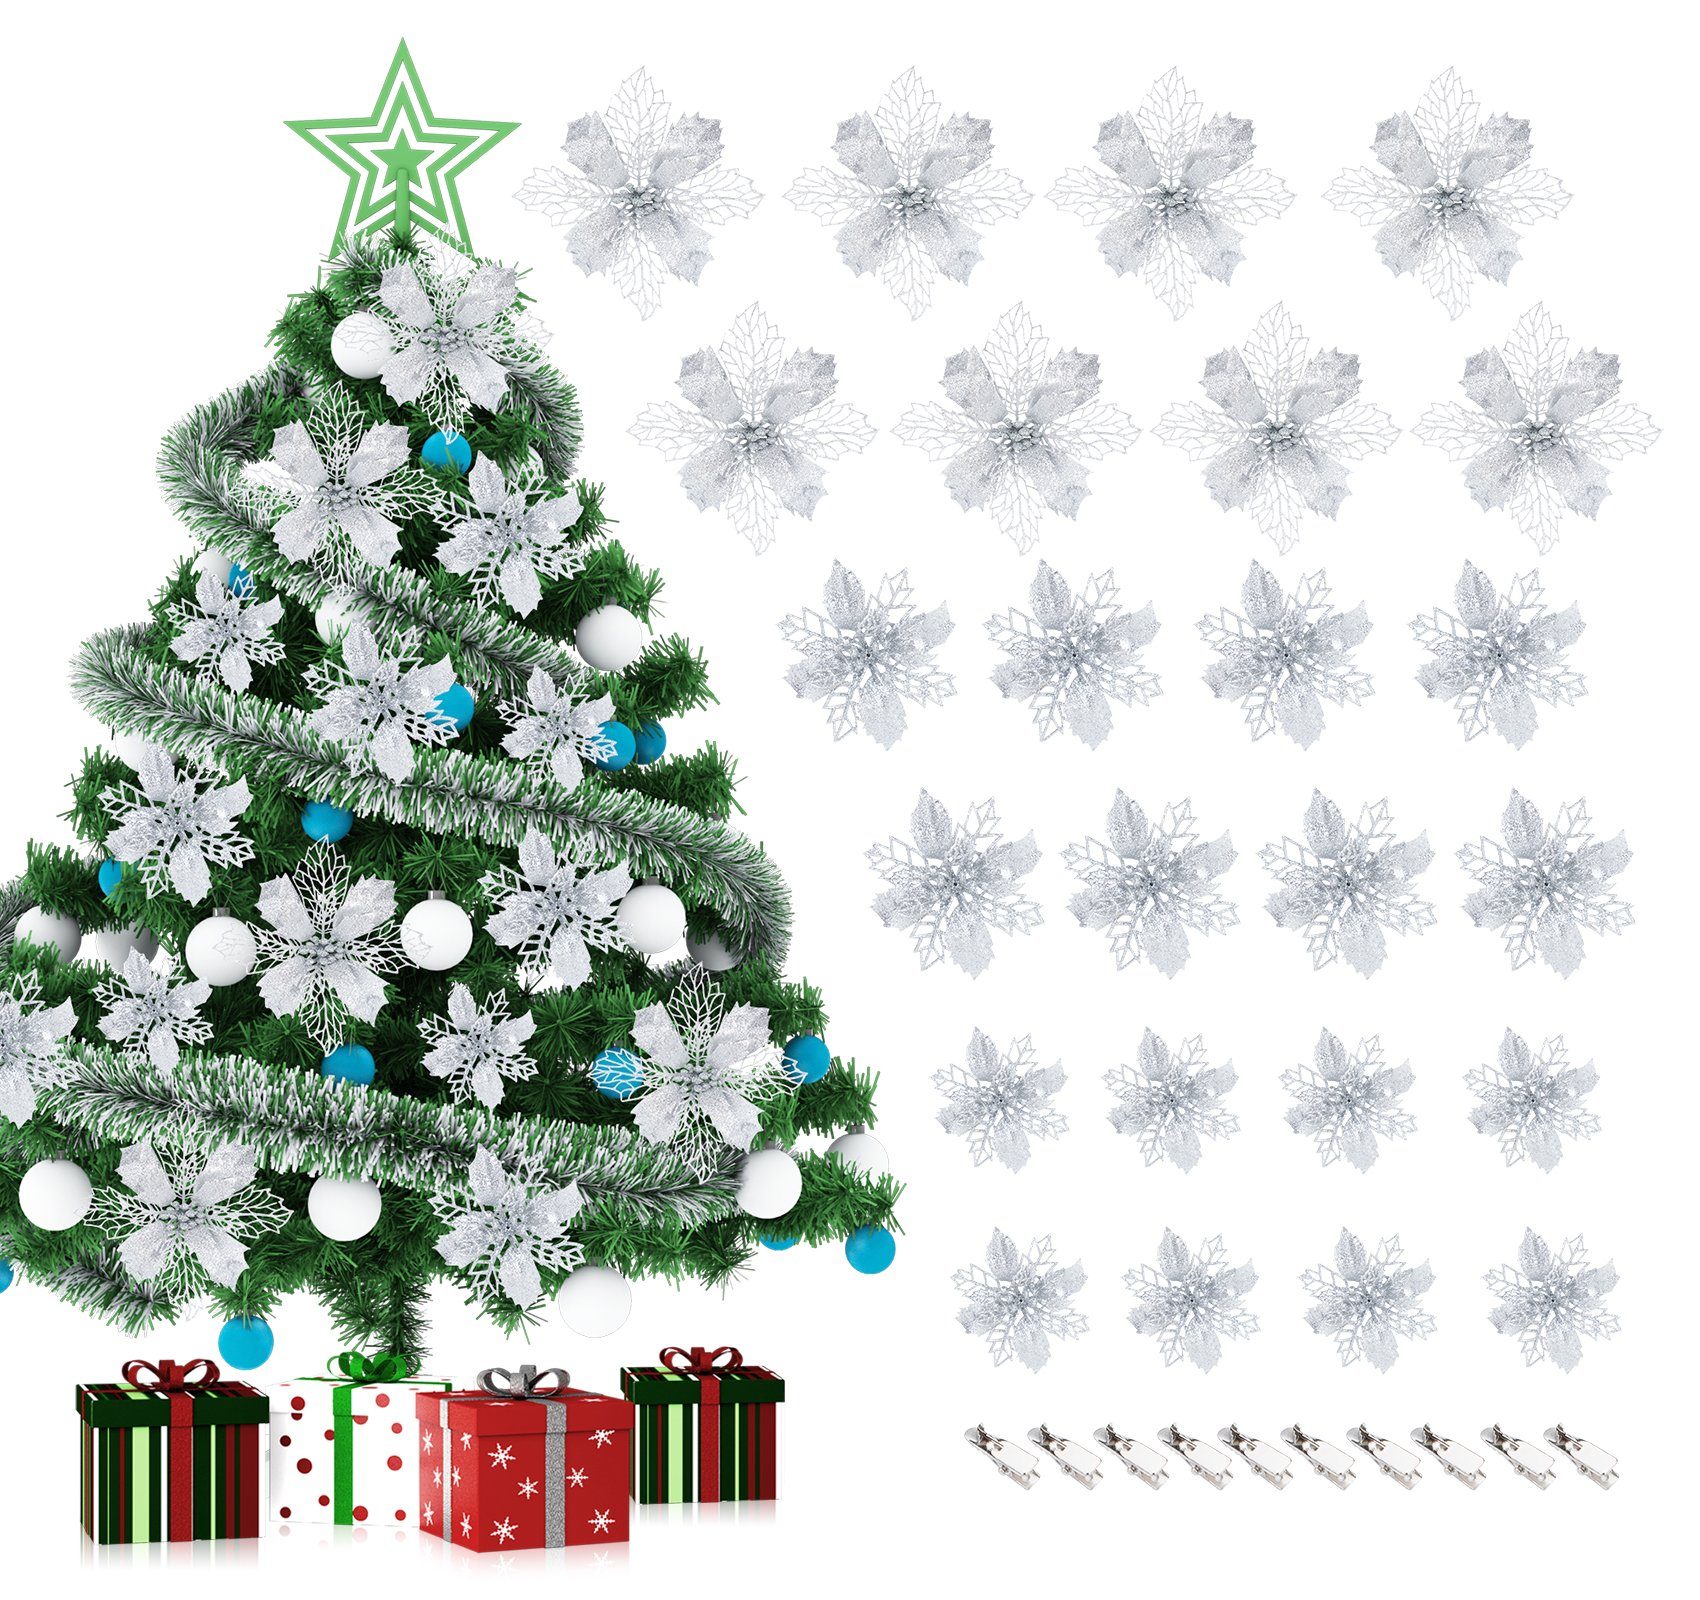 Homewit Christbaumschmuck Glitzer Weihnachtsblumen Kunstblume mit Clips Weihnachtsbaum Deko (24-tlg), Weihnachtsschmuck Weihnachtsdeko Ornamente für Kränze und Girlande Silbern